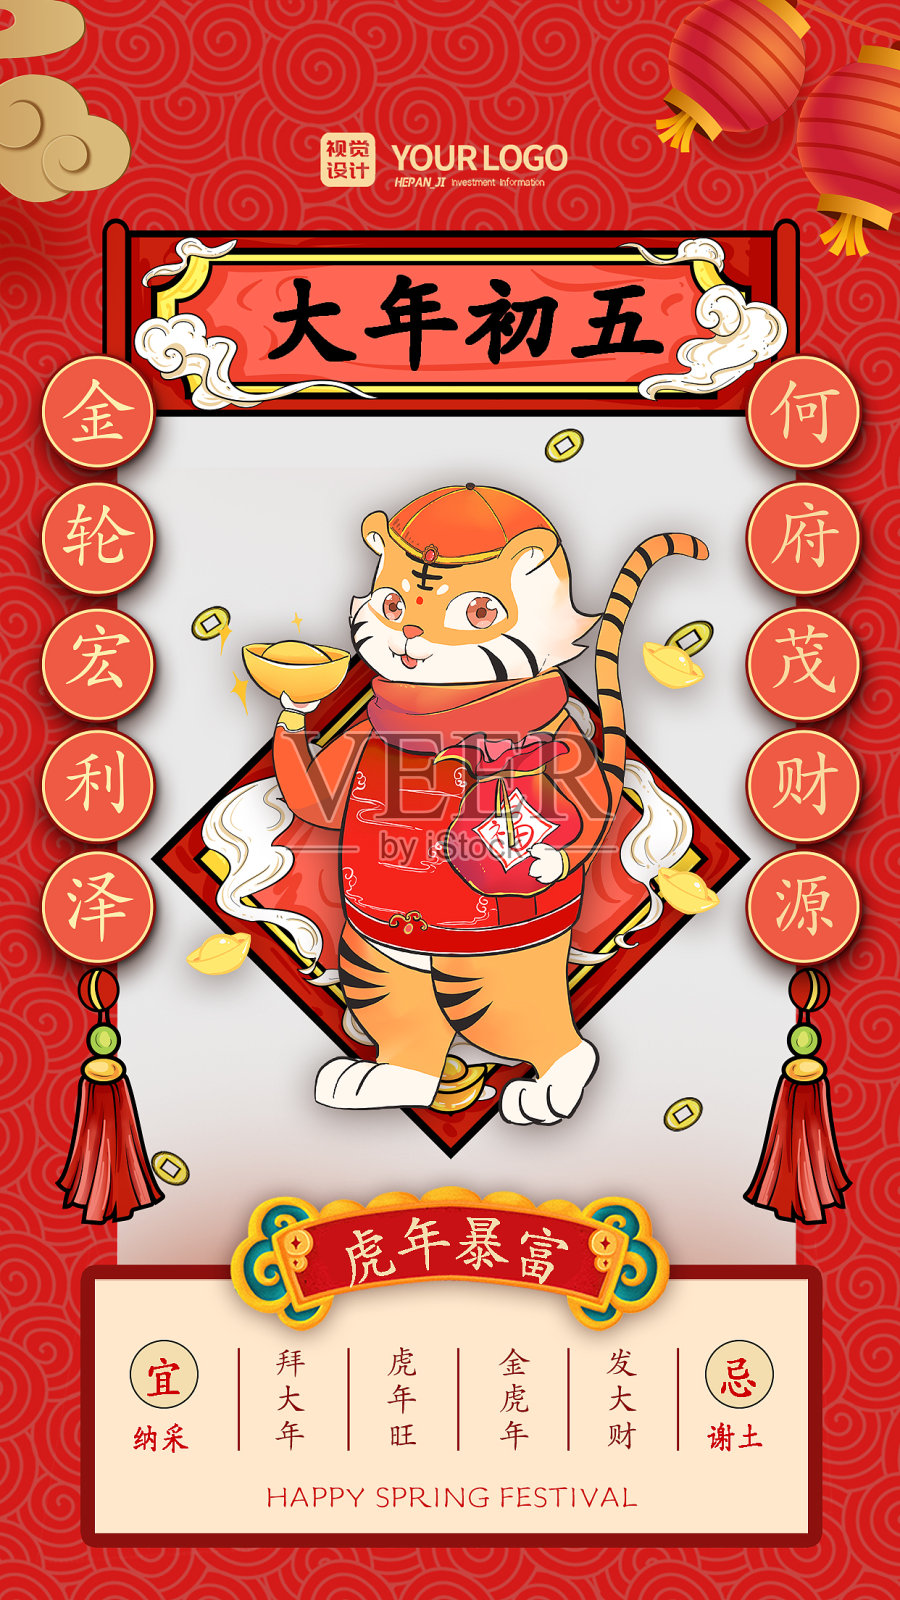 红色经典国潮风大年初五虎年春节系列手机海报设计模板素材